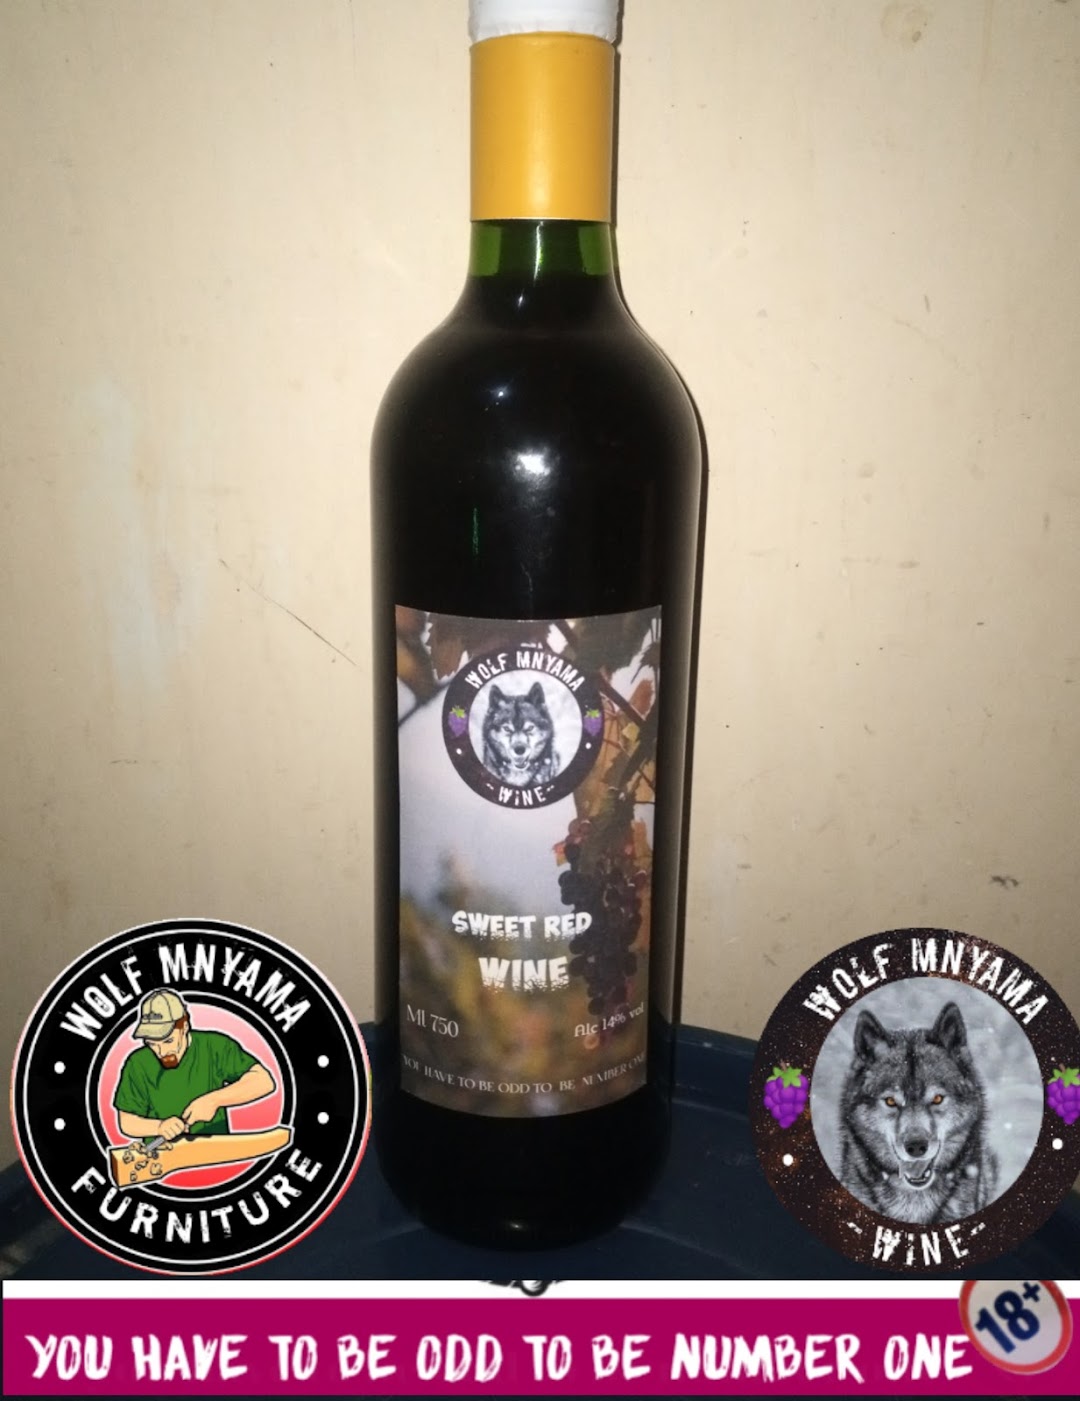 Wolf mnyama wine store